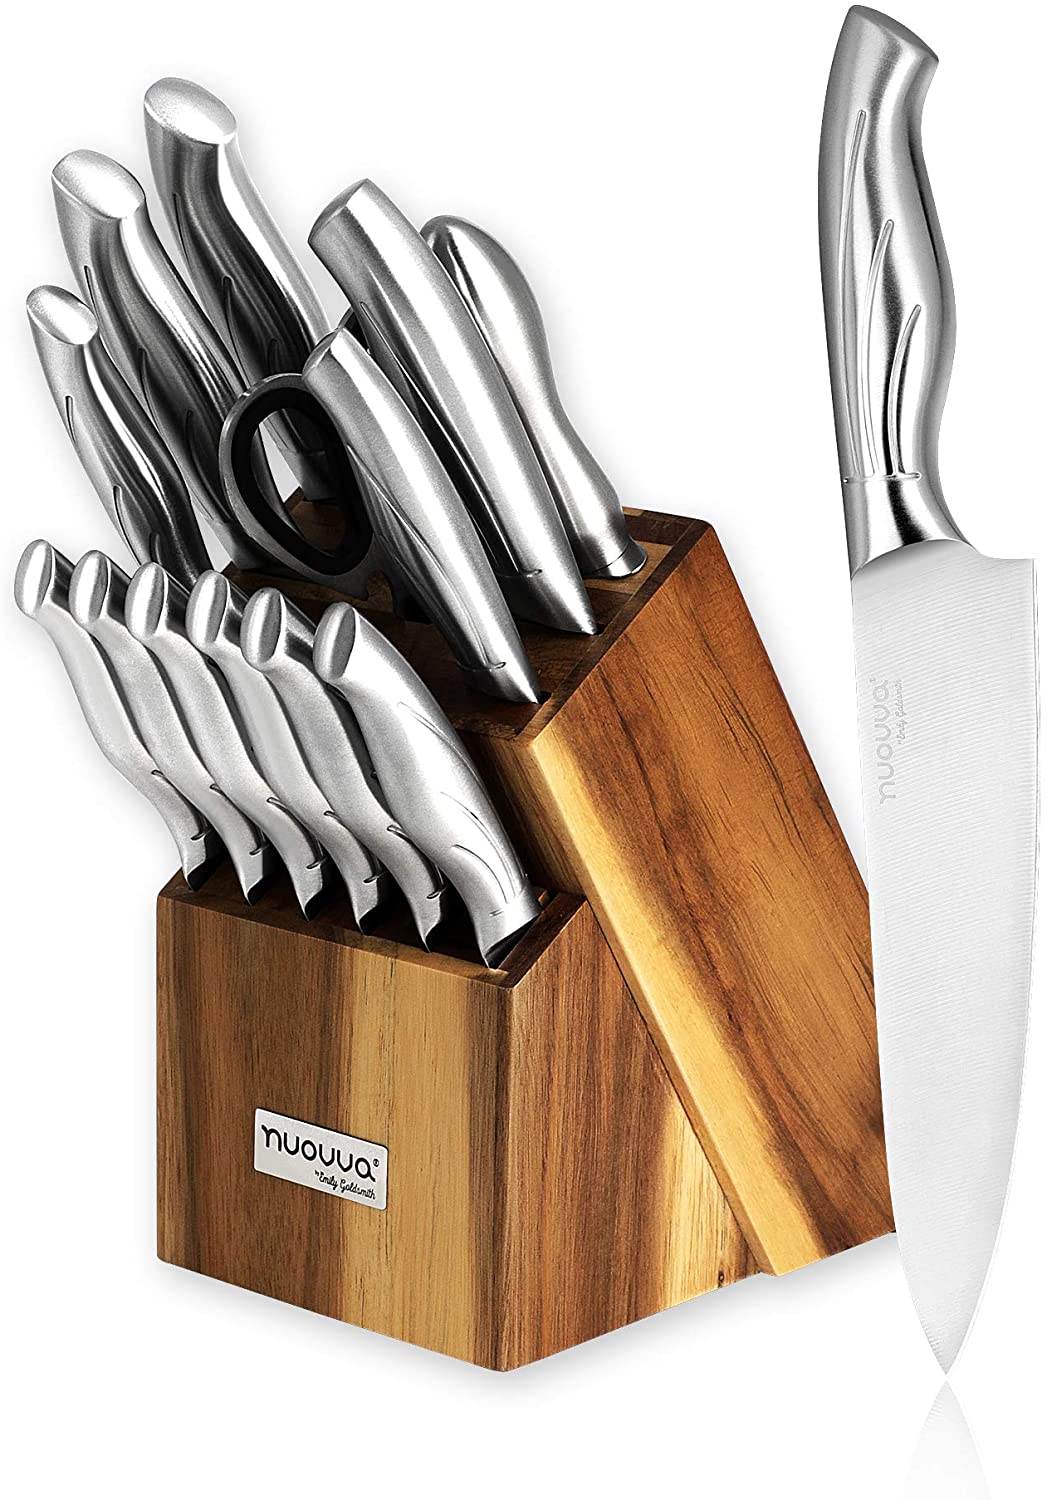 Stainless Steel Knife Set with Hardwood Block | 14pcs Nuovva – Koch & Köchin